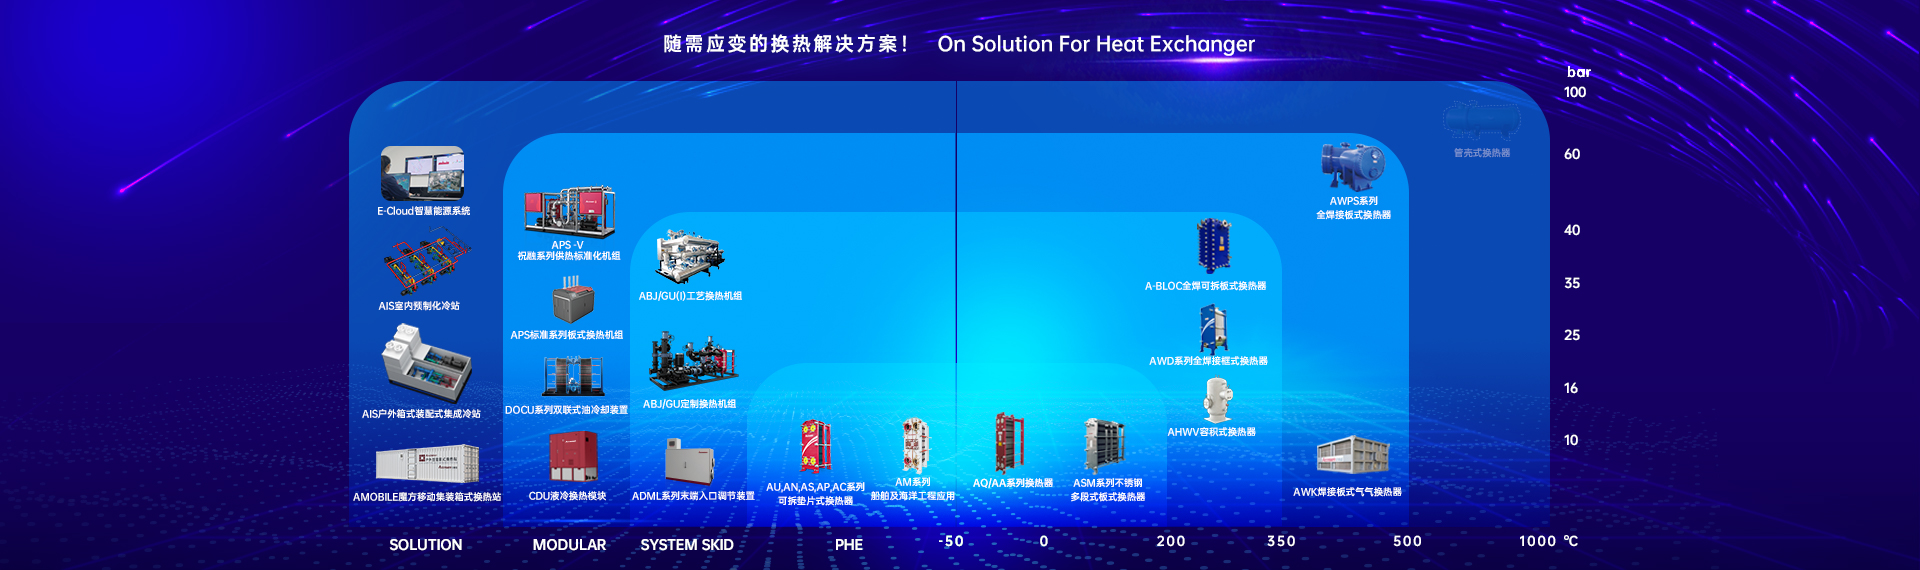 重庆同方科技发展有限公司——重庆云计算产业基地